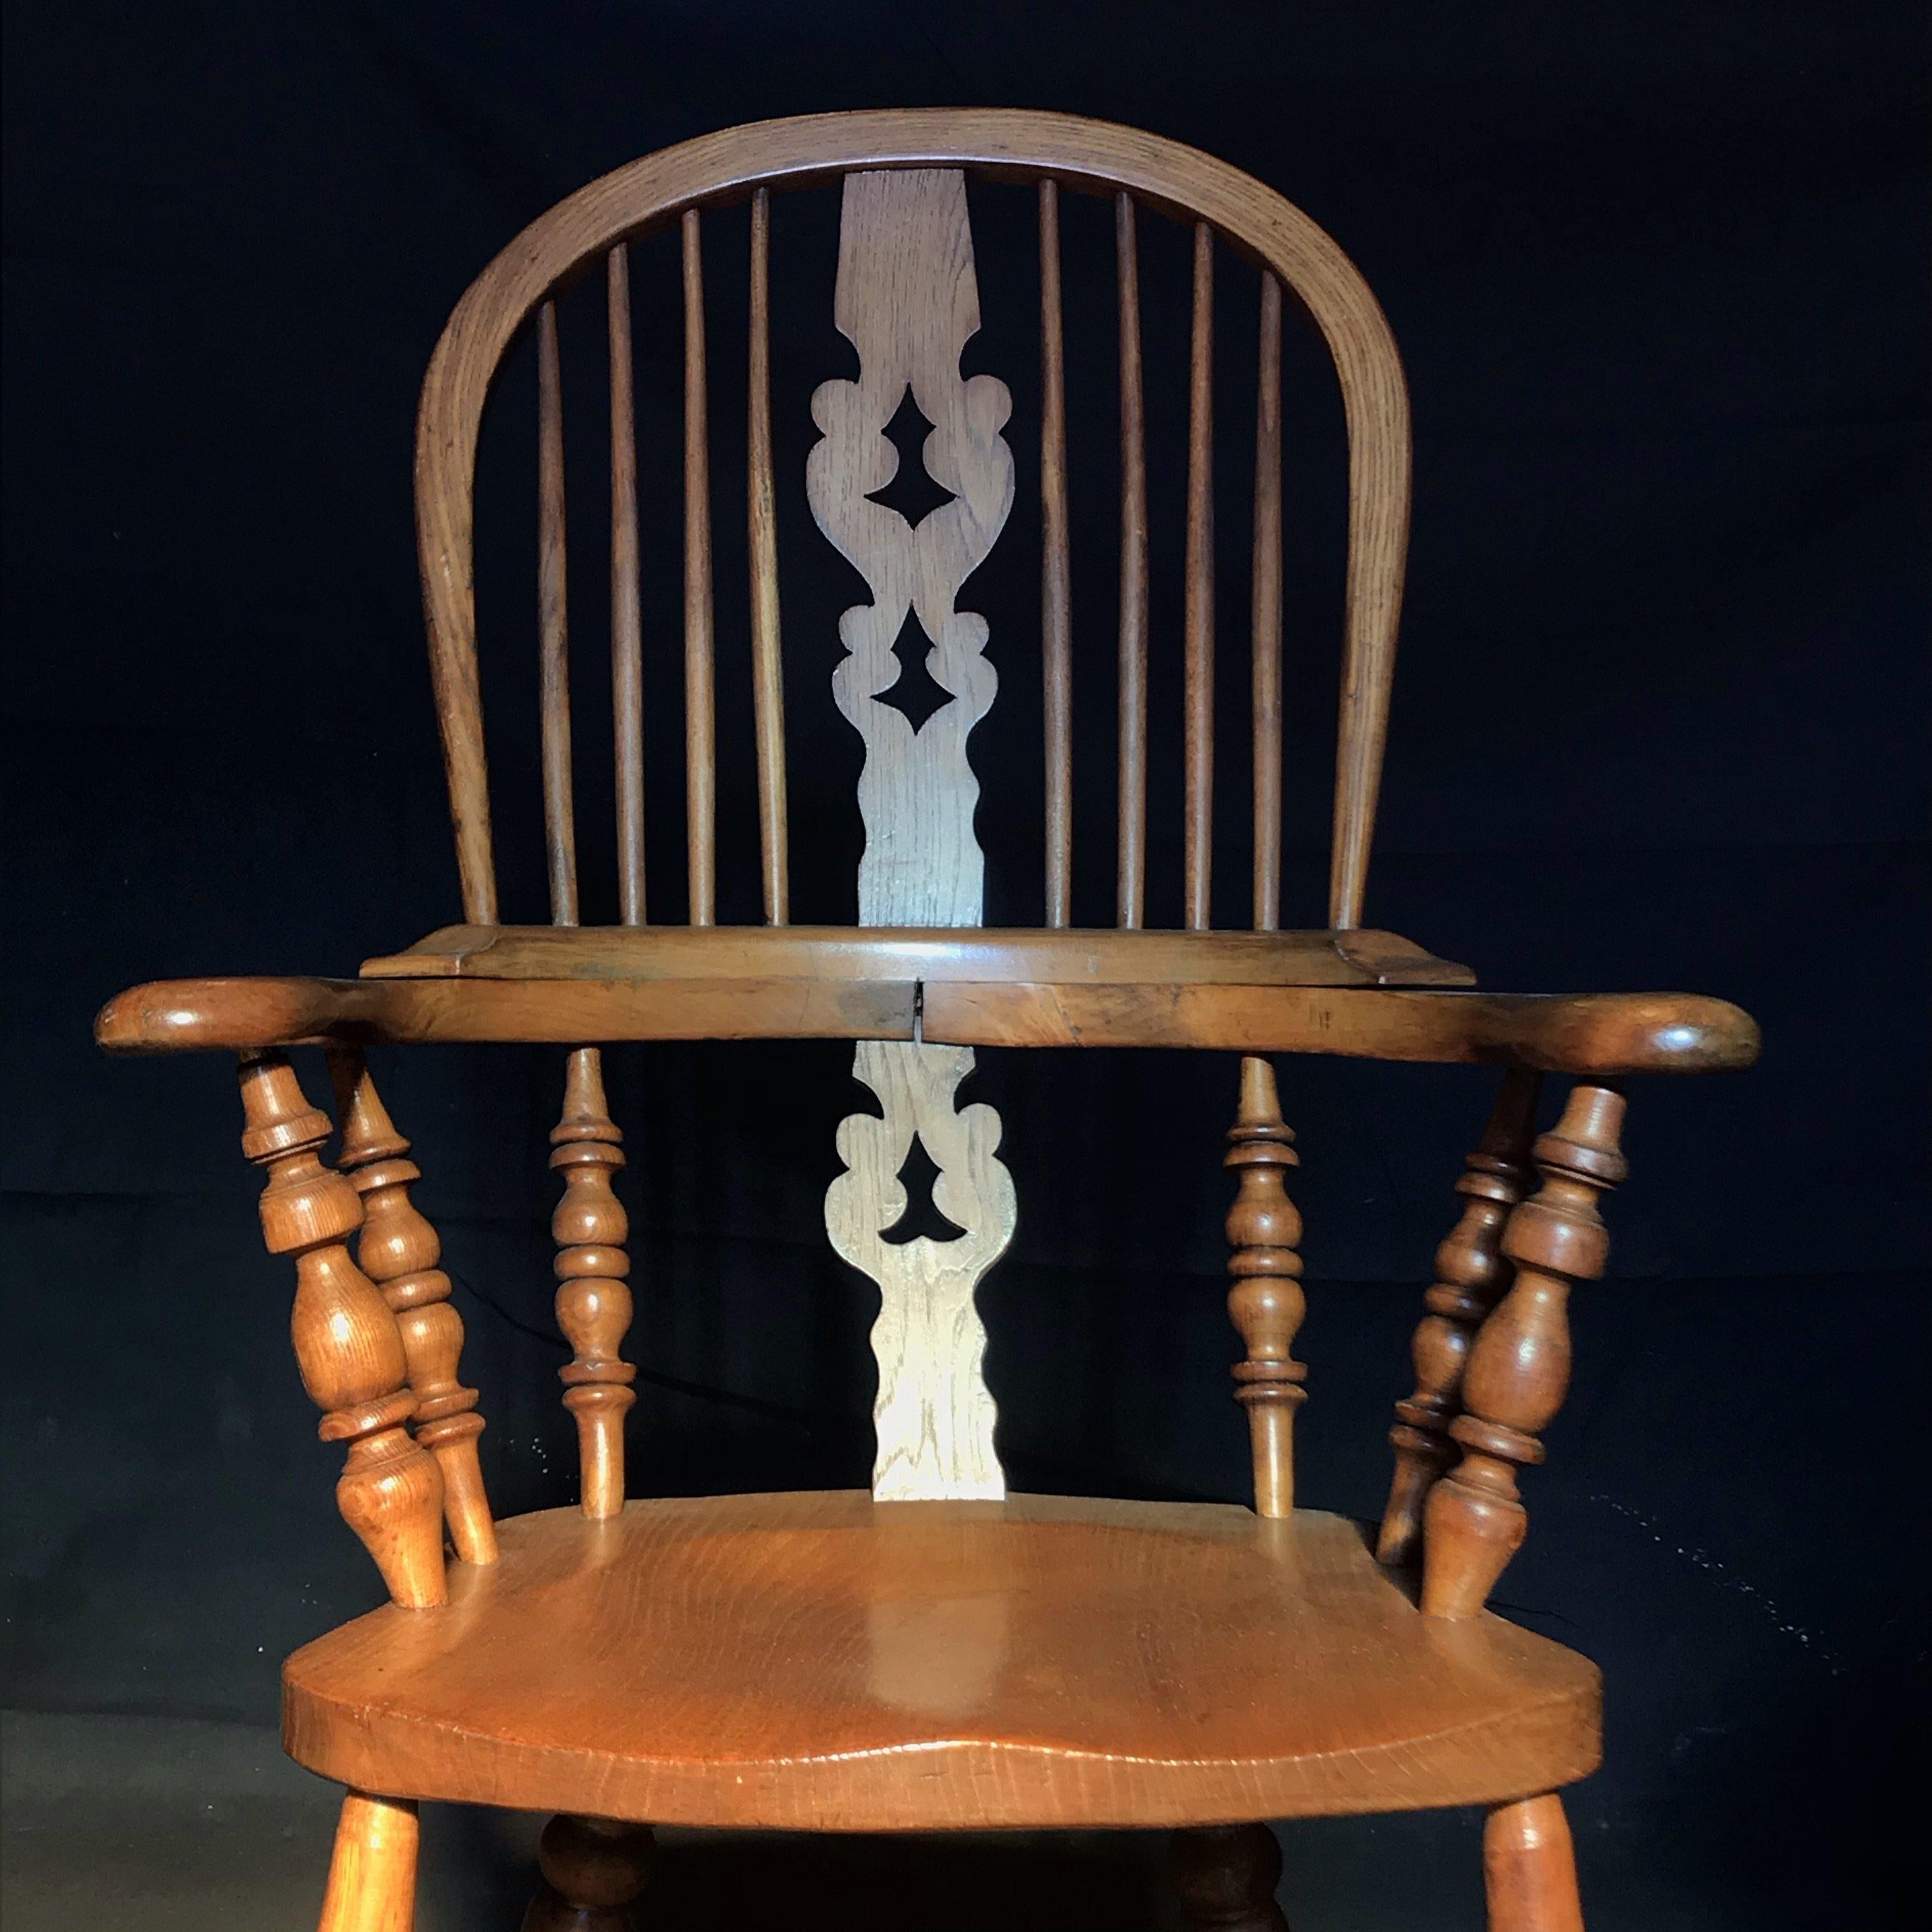 Windsor-Sessel aus Nussbaum vom Anfang des 20. Jahrhunderts mit gedrechselten Beinen und Läufern, gut strukturiert und sehr bequem. Der Windsor-Stuhl gilt als einer der großen Klassiker der englischen Landhausmöbel. Das Wort Windsor bezieht sich